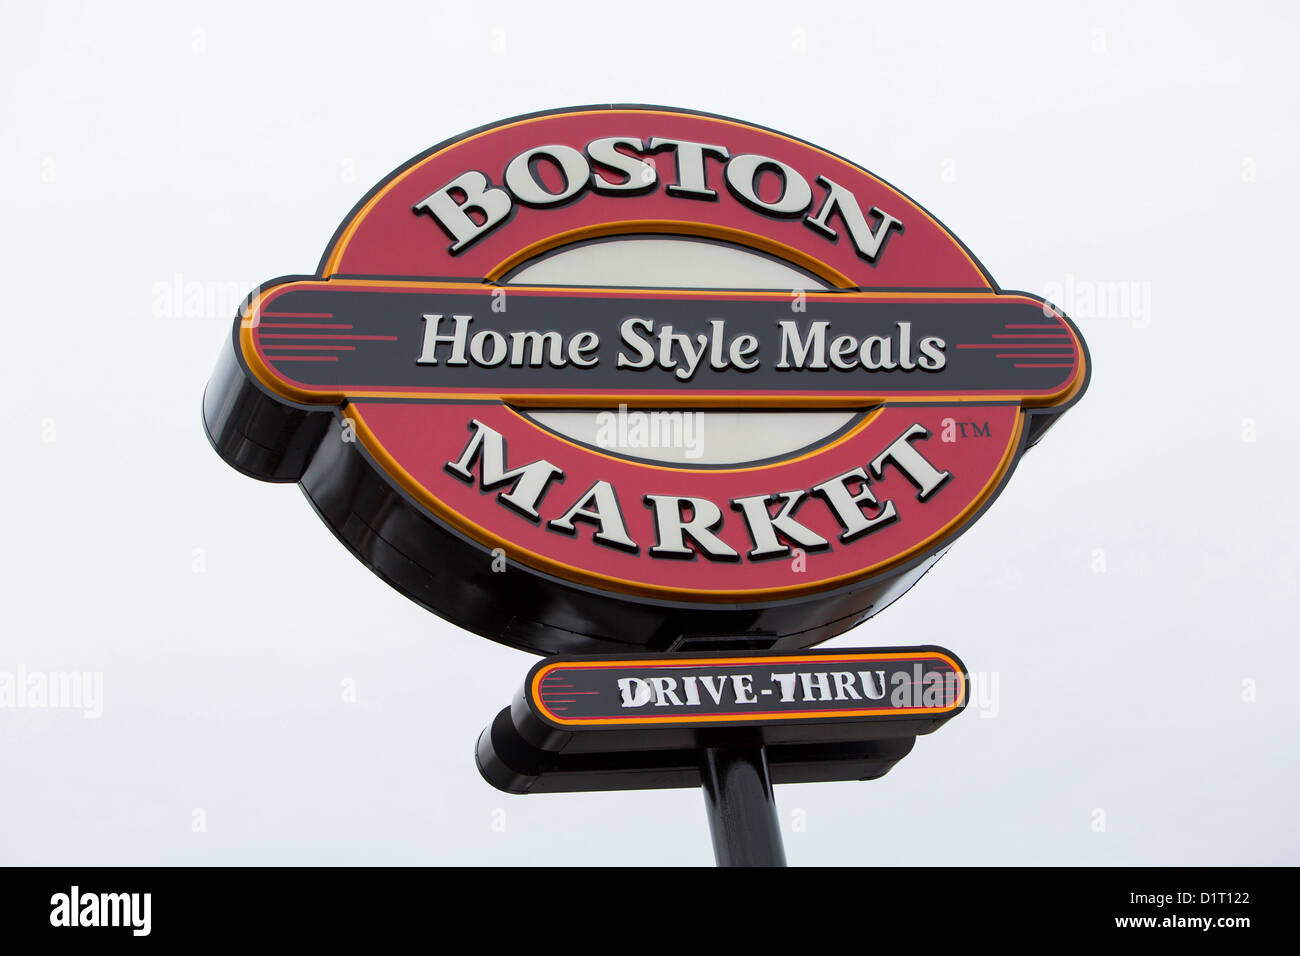 Une chaîne de restauration décontractée Boston Market restaurant. Banque D'Images